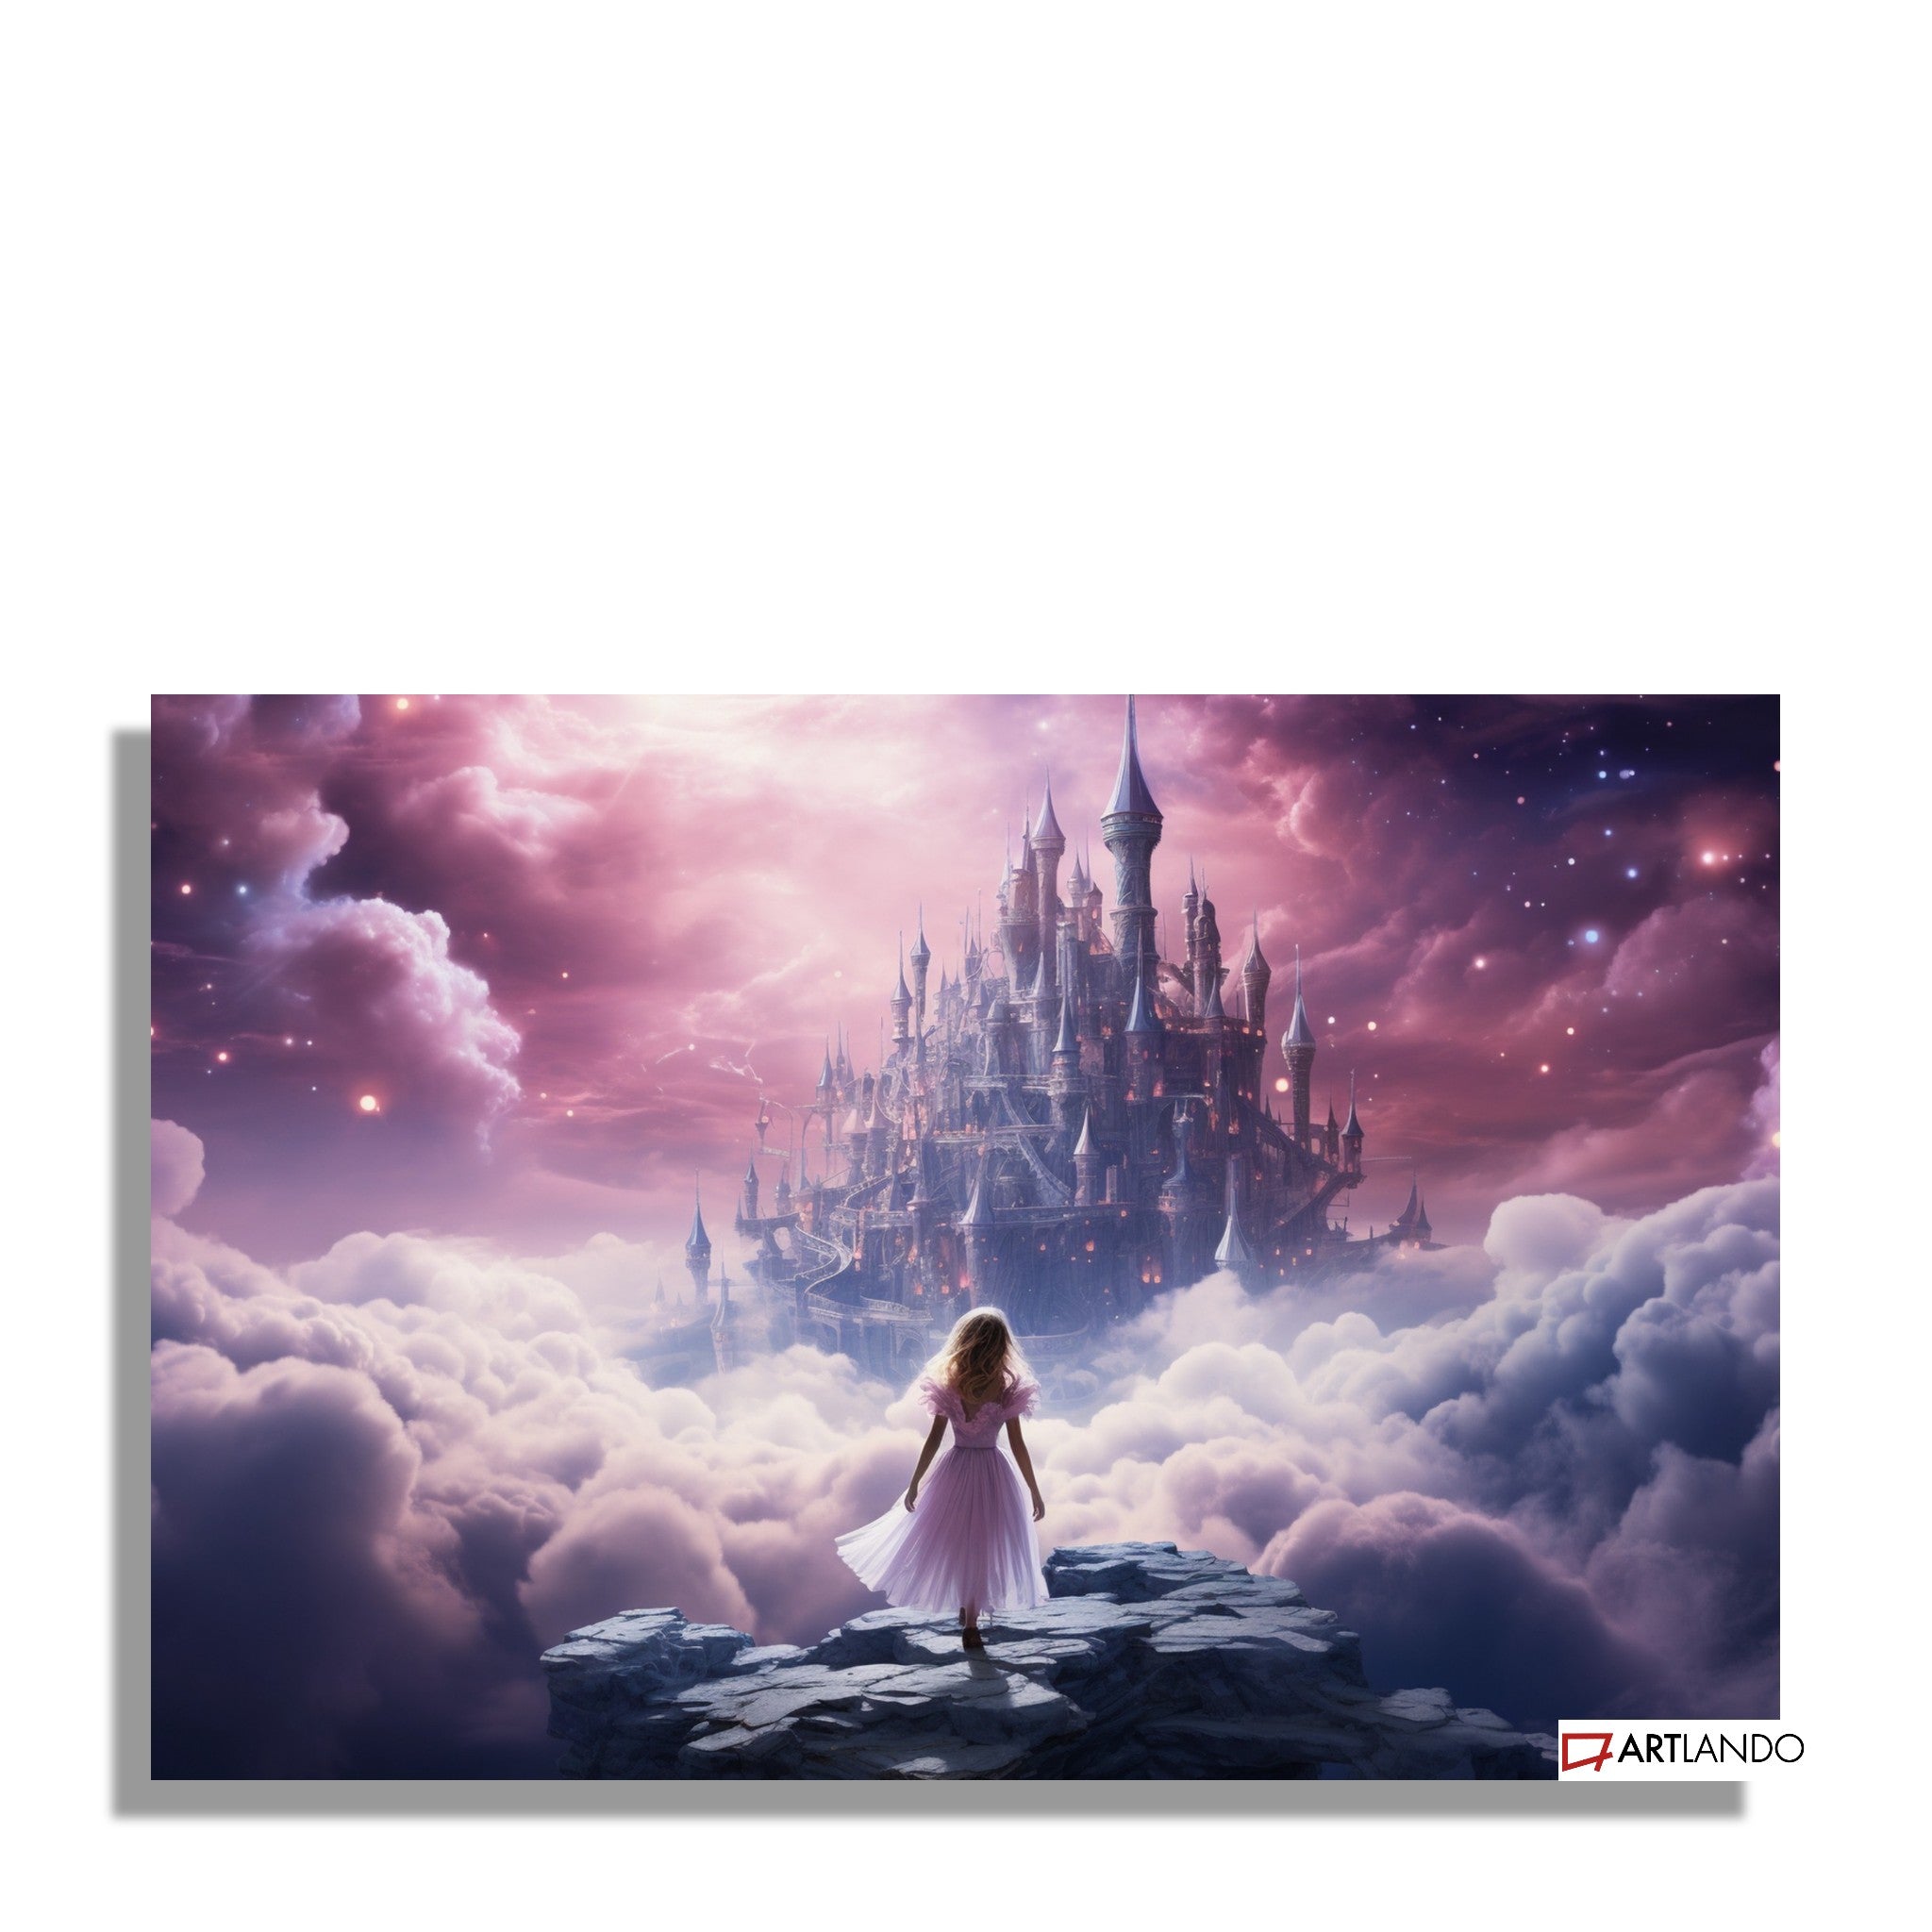 Mädchen steht vor verzaubertem Schloss umgeben von lila Wolken und Sternen